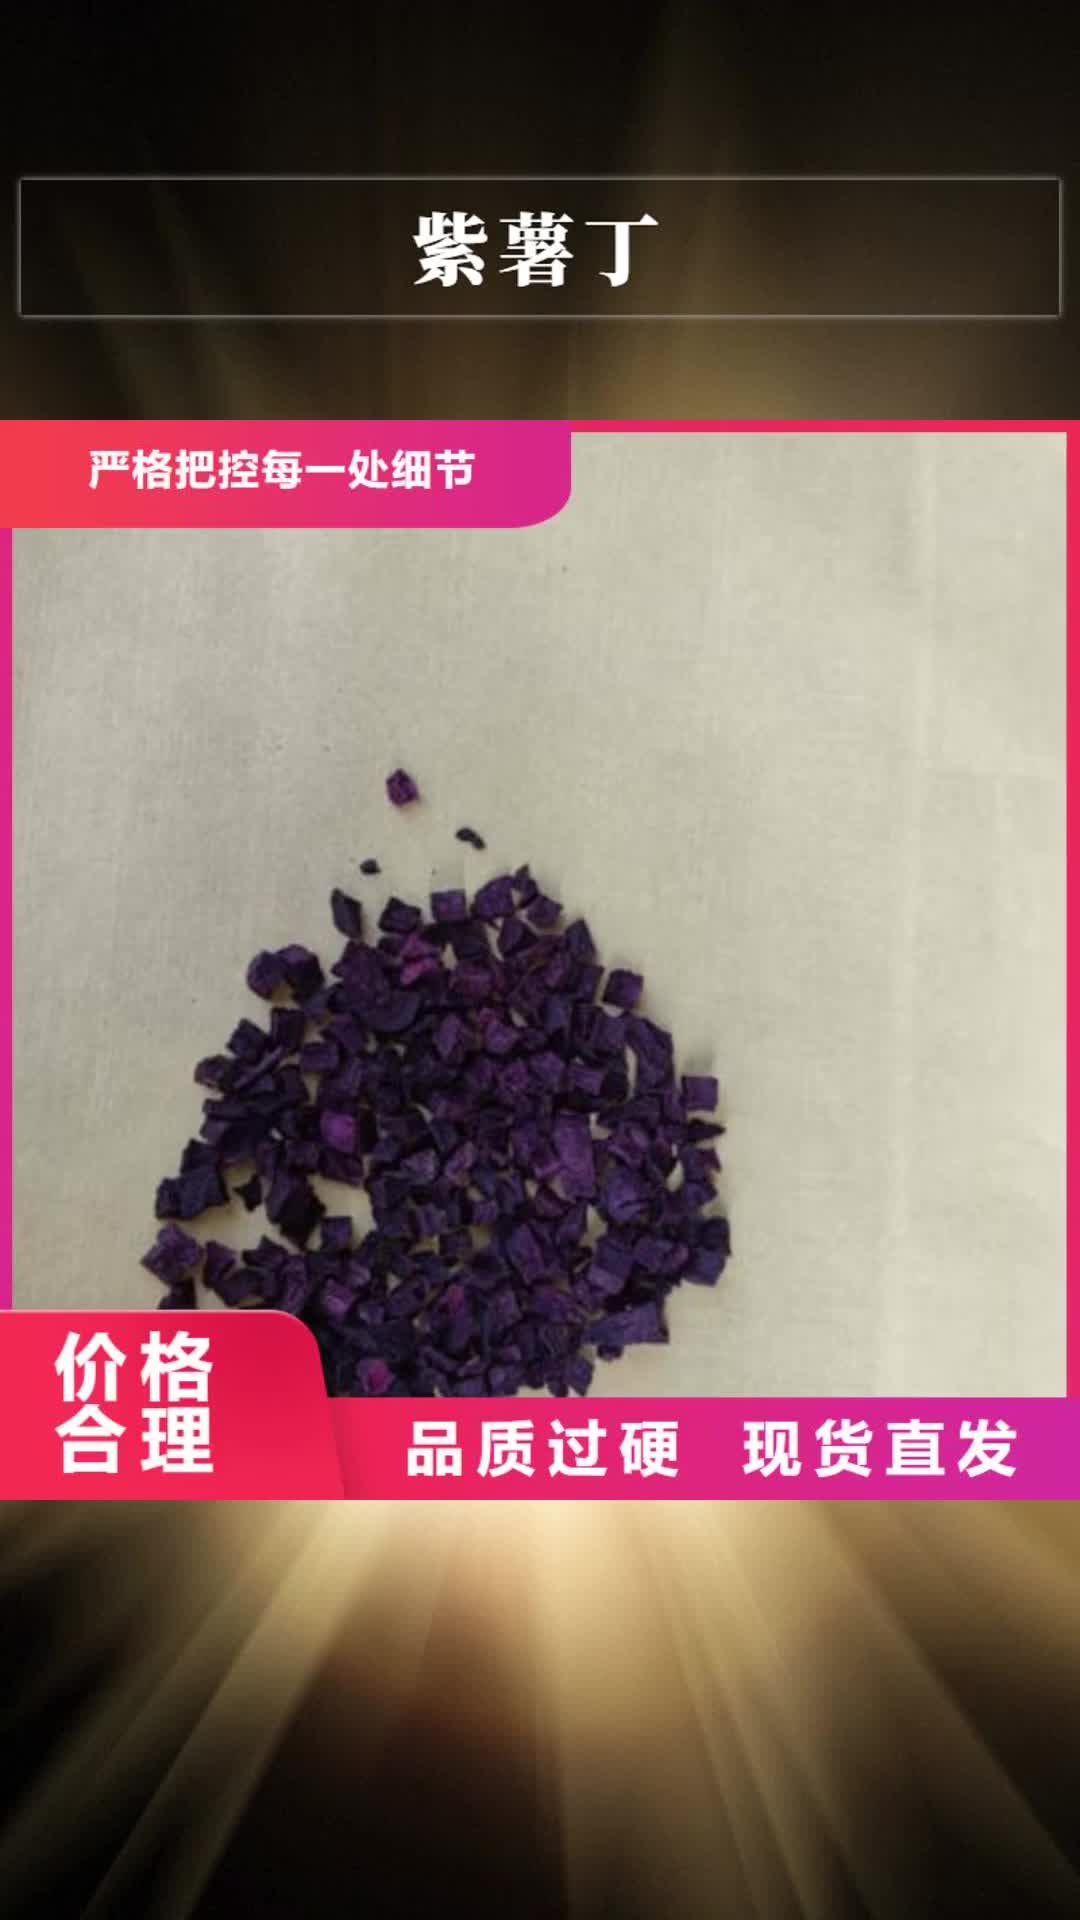 克拉玛依 紫薯丁,【芦笋粉】量少也做